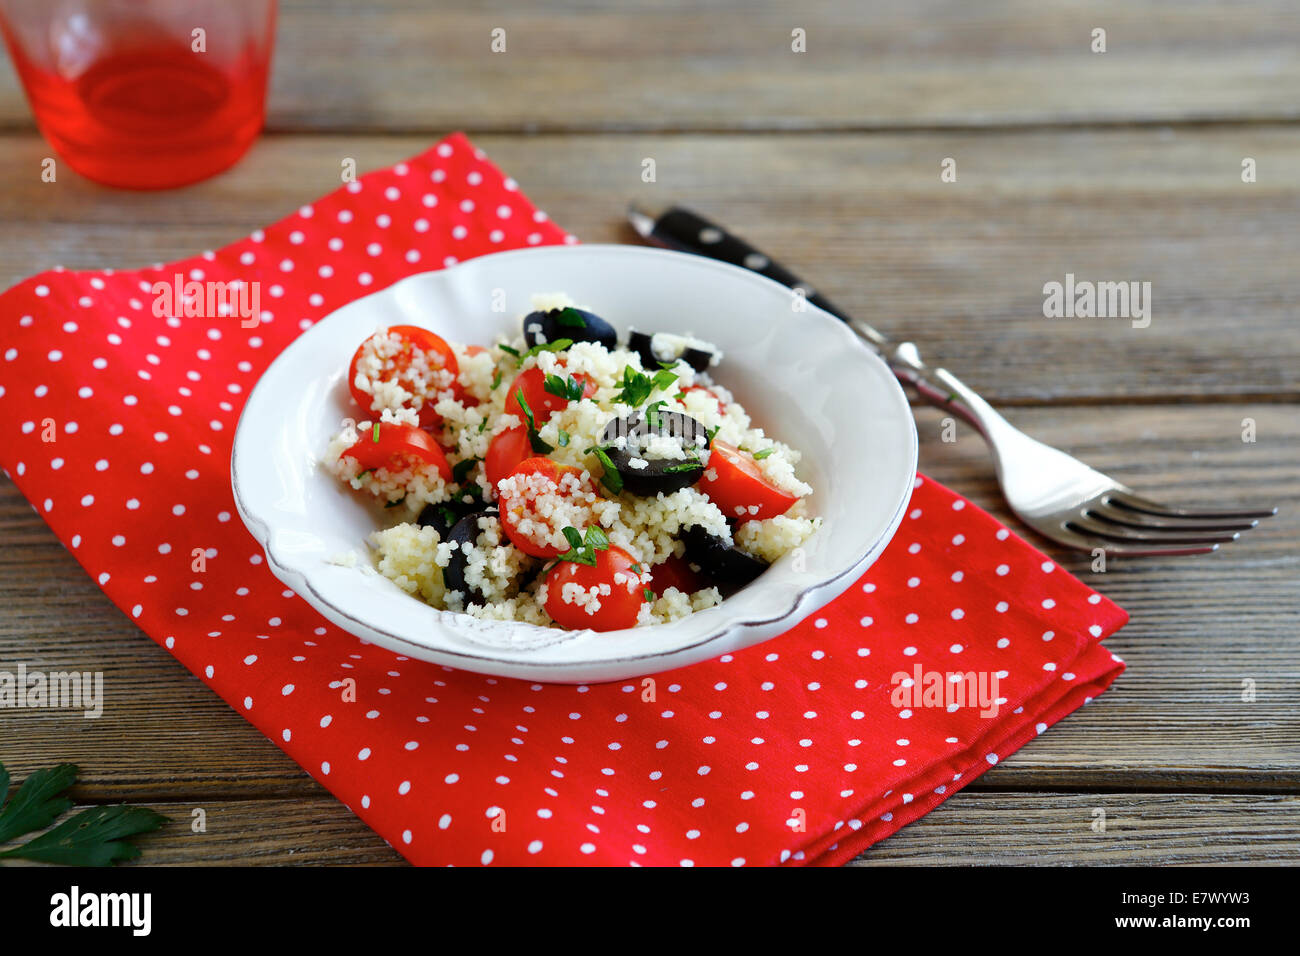 Couscous aux tomates et olives, de l'alimentation close up Banque D'Images